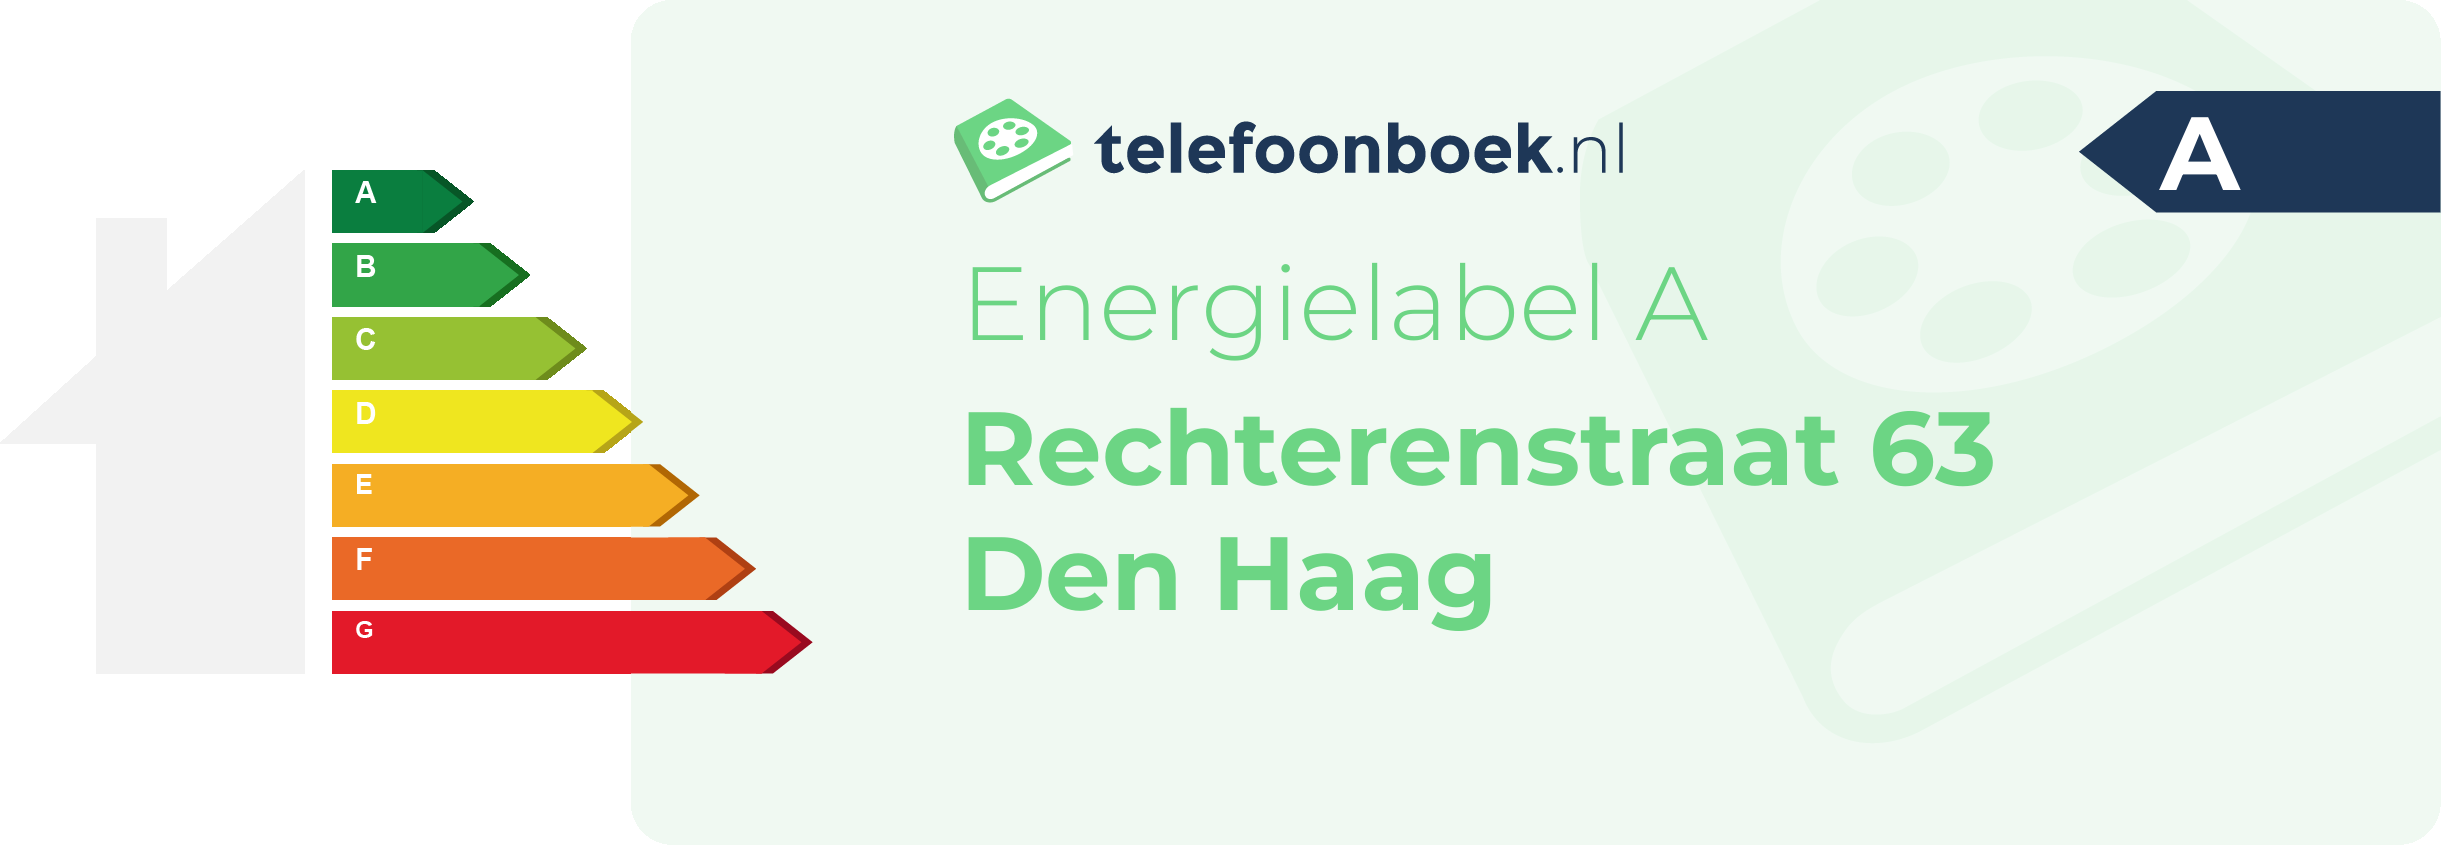 Energielabel Rechterenstraat 63 Den Haag